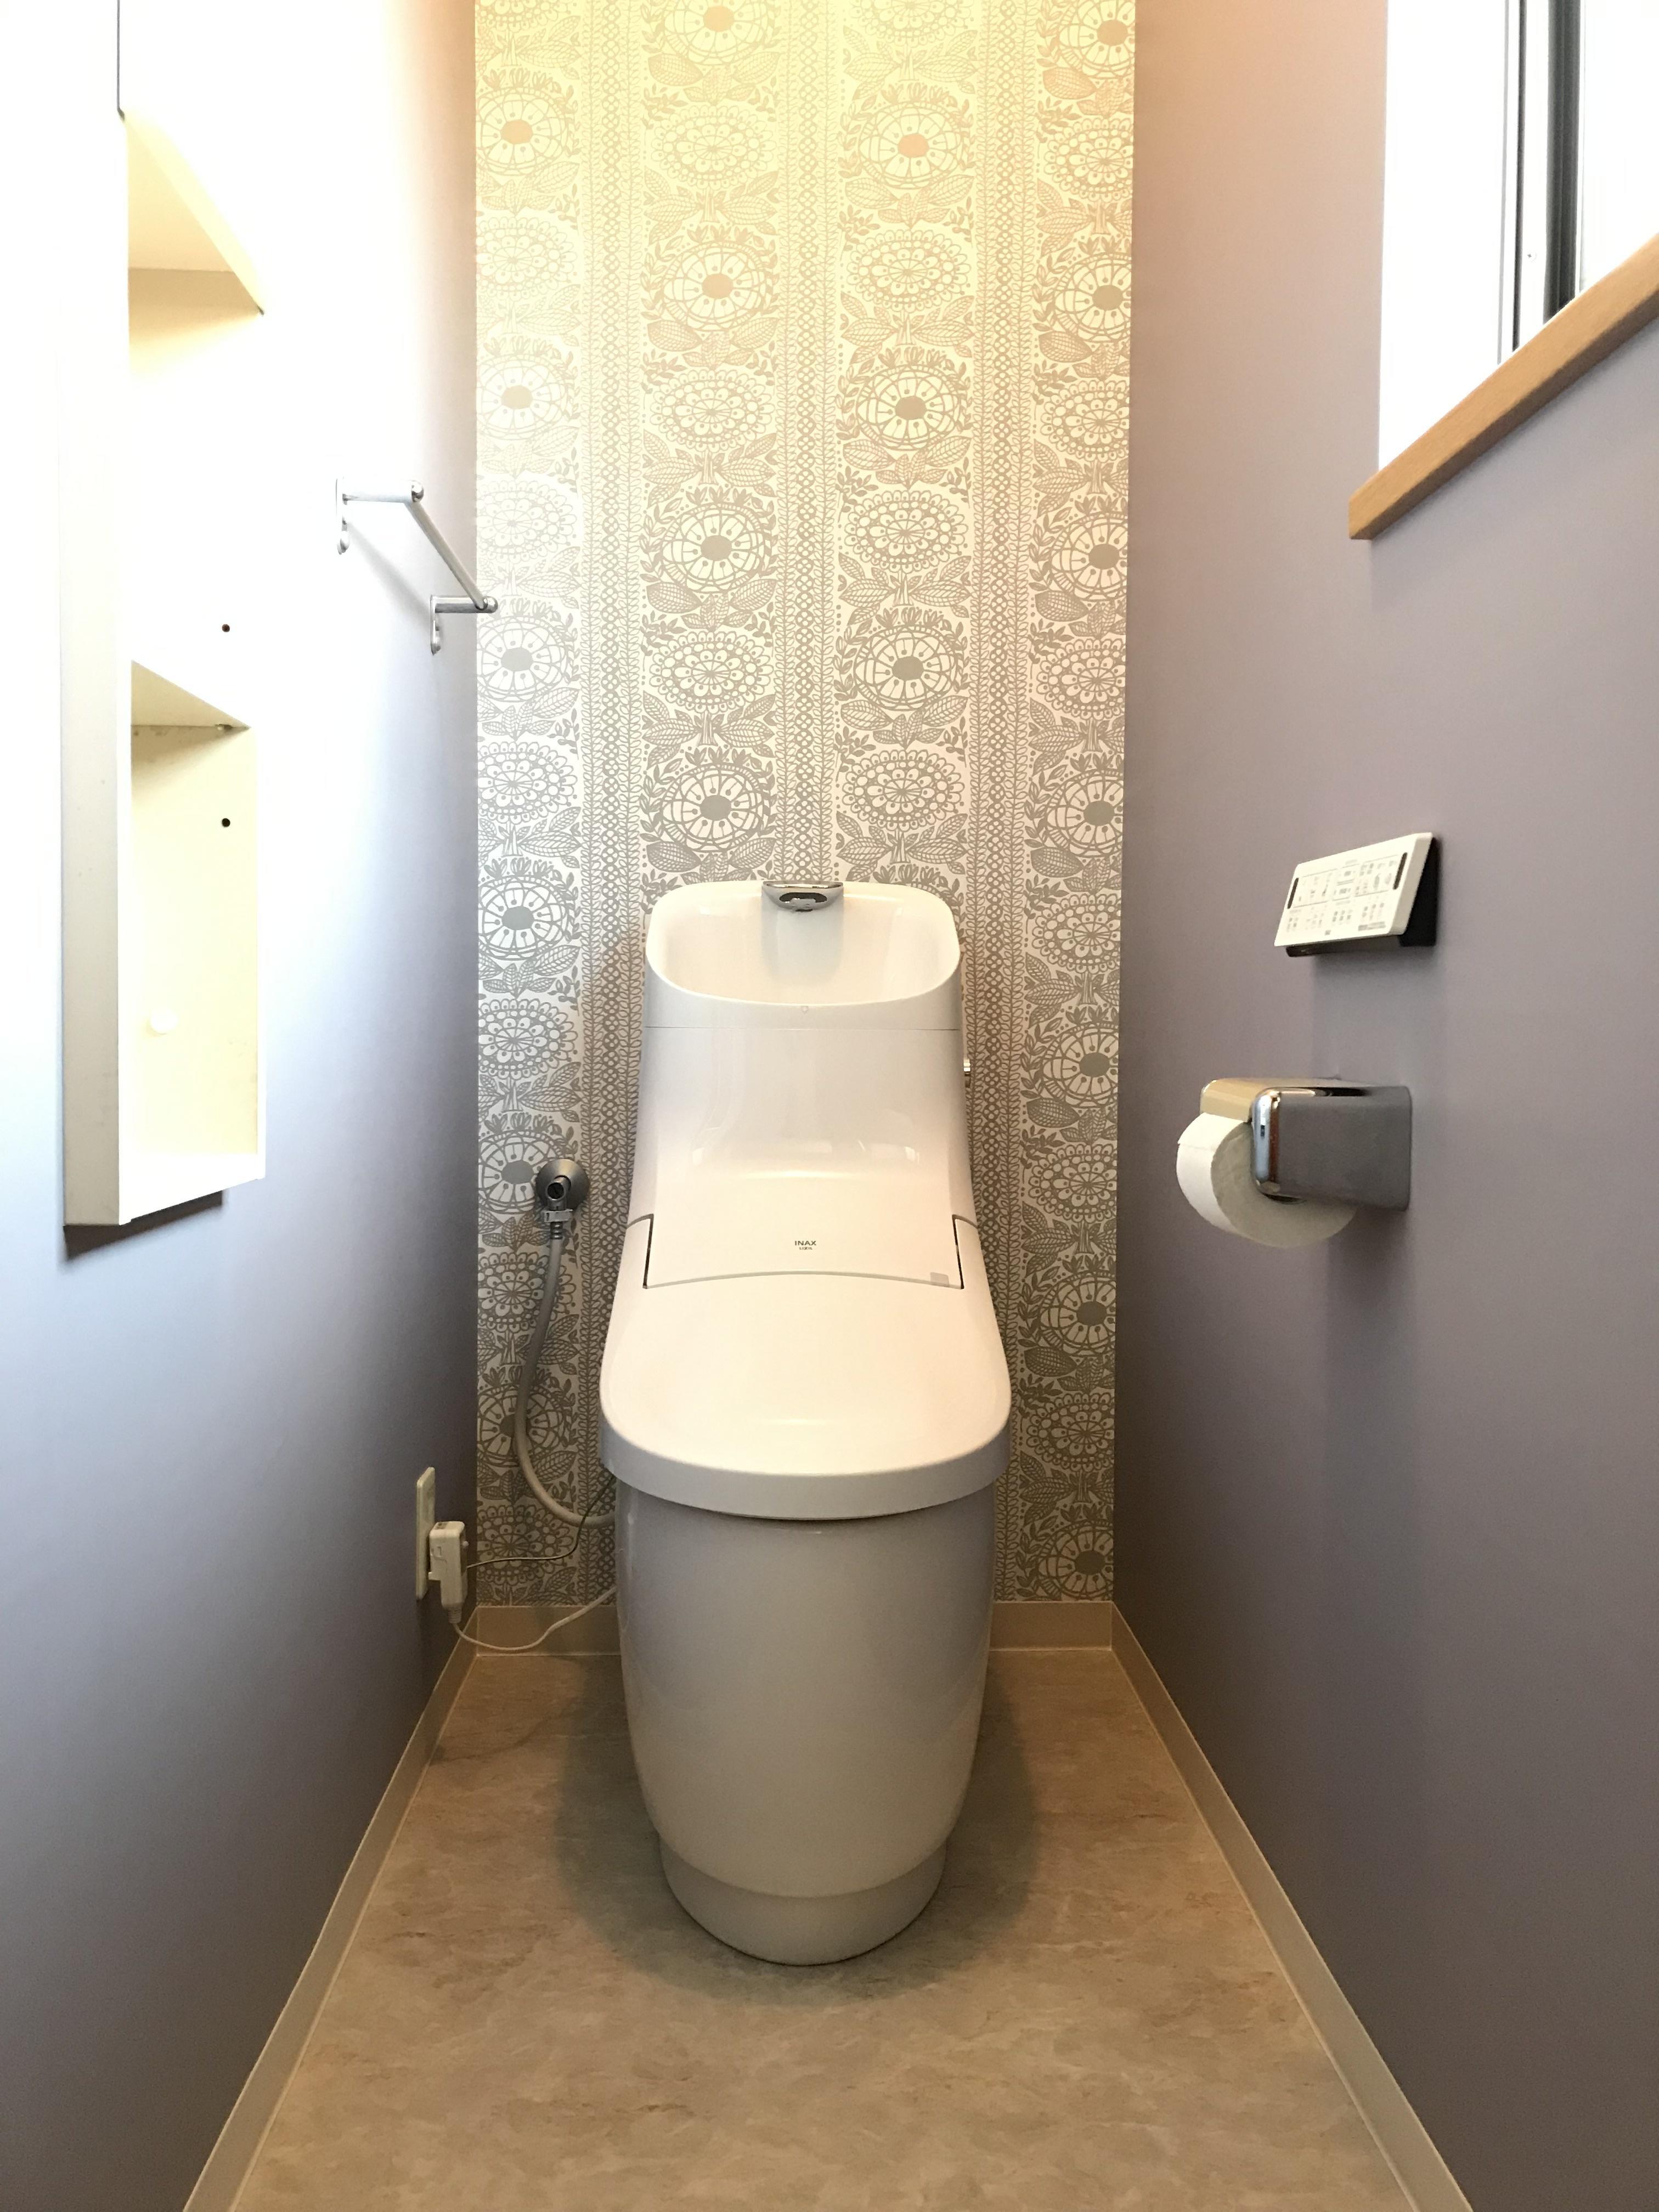 アメージュ [BC-Z30PM BB7 DT-Z382PMW BB7] リクシル アメージュシャワートイレ 床上(壁)排水155タイプ  グレードZ2 一体型 寒冷地(流動) 手洗い付 ハイパーキラミック トイレ